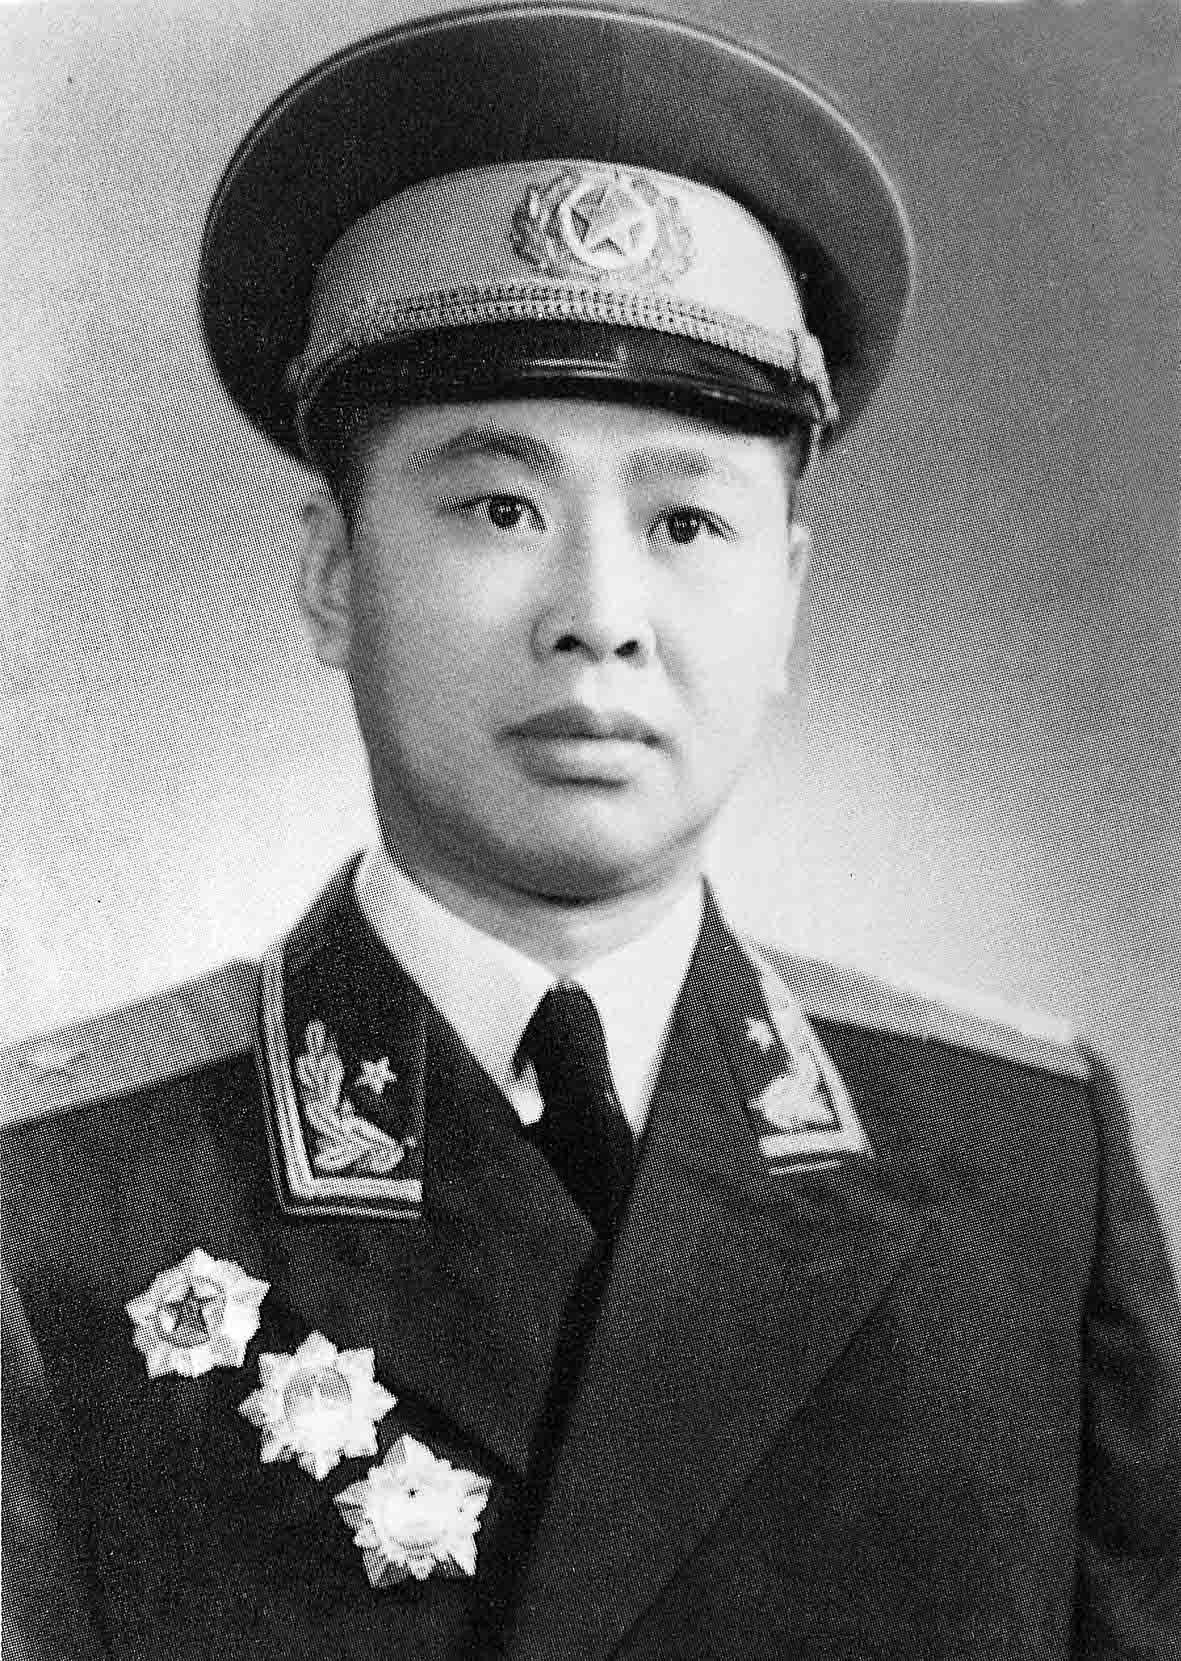 10-3,1940年带队南下曾经担任过老1团团长、北京军区副司令员的宋玉琳少将.jpg